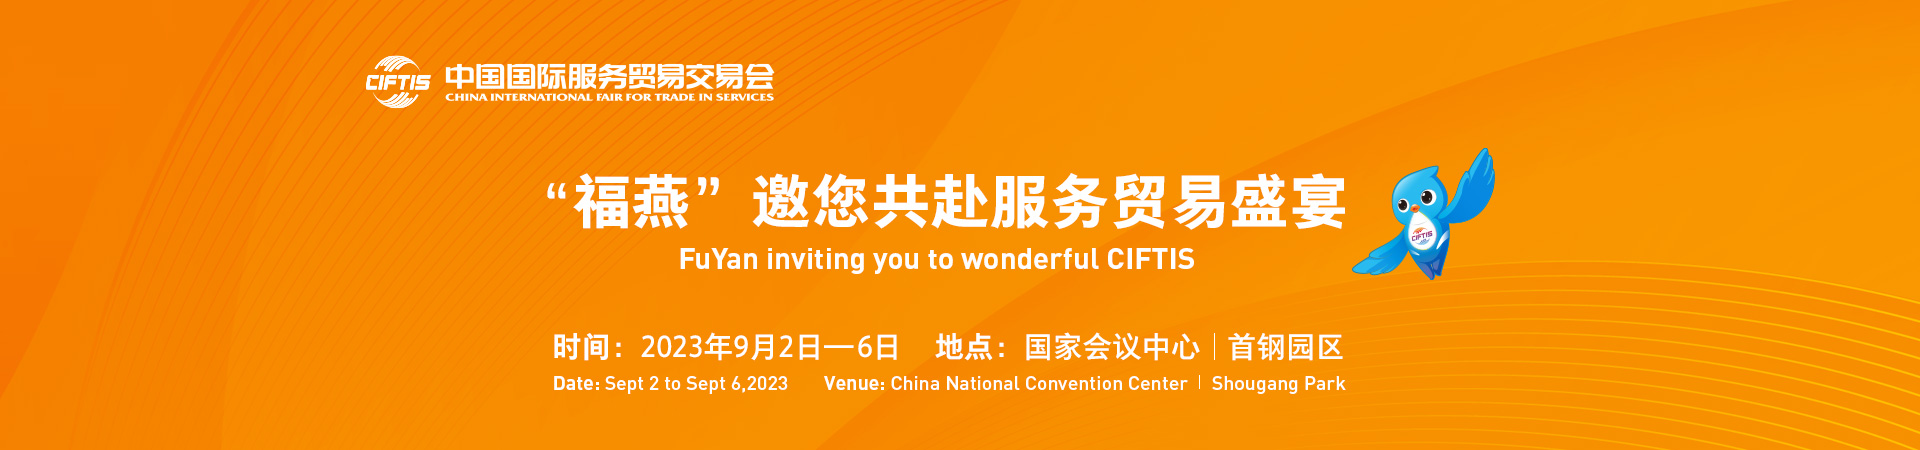 Trade fair - CIFTIS 2023 in Beijing